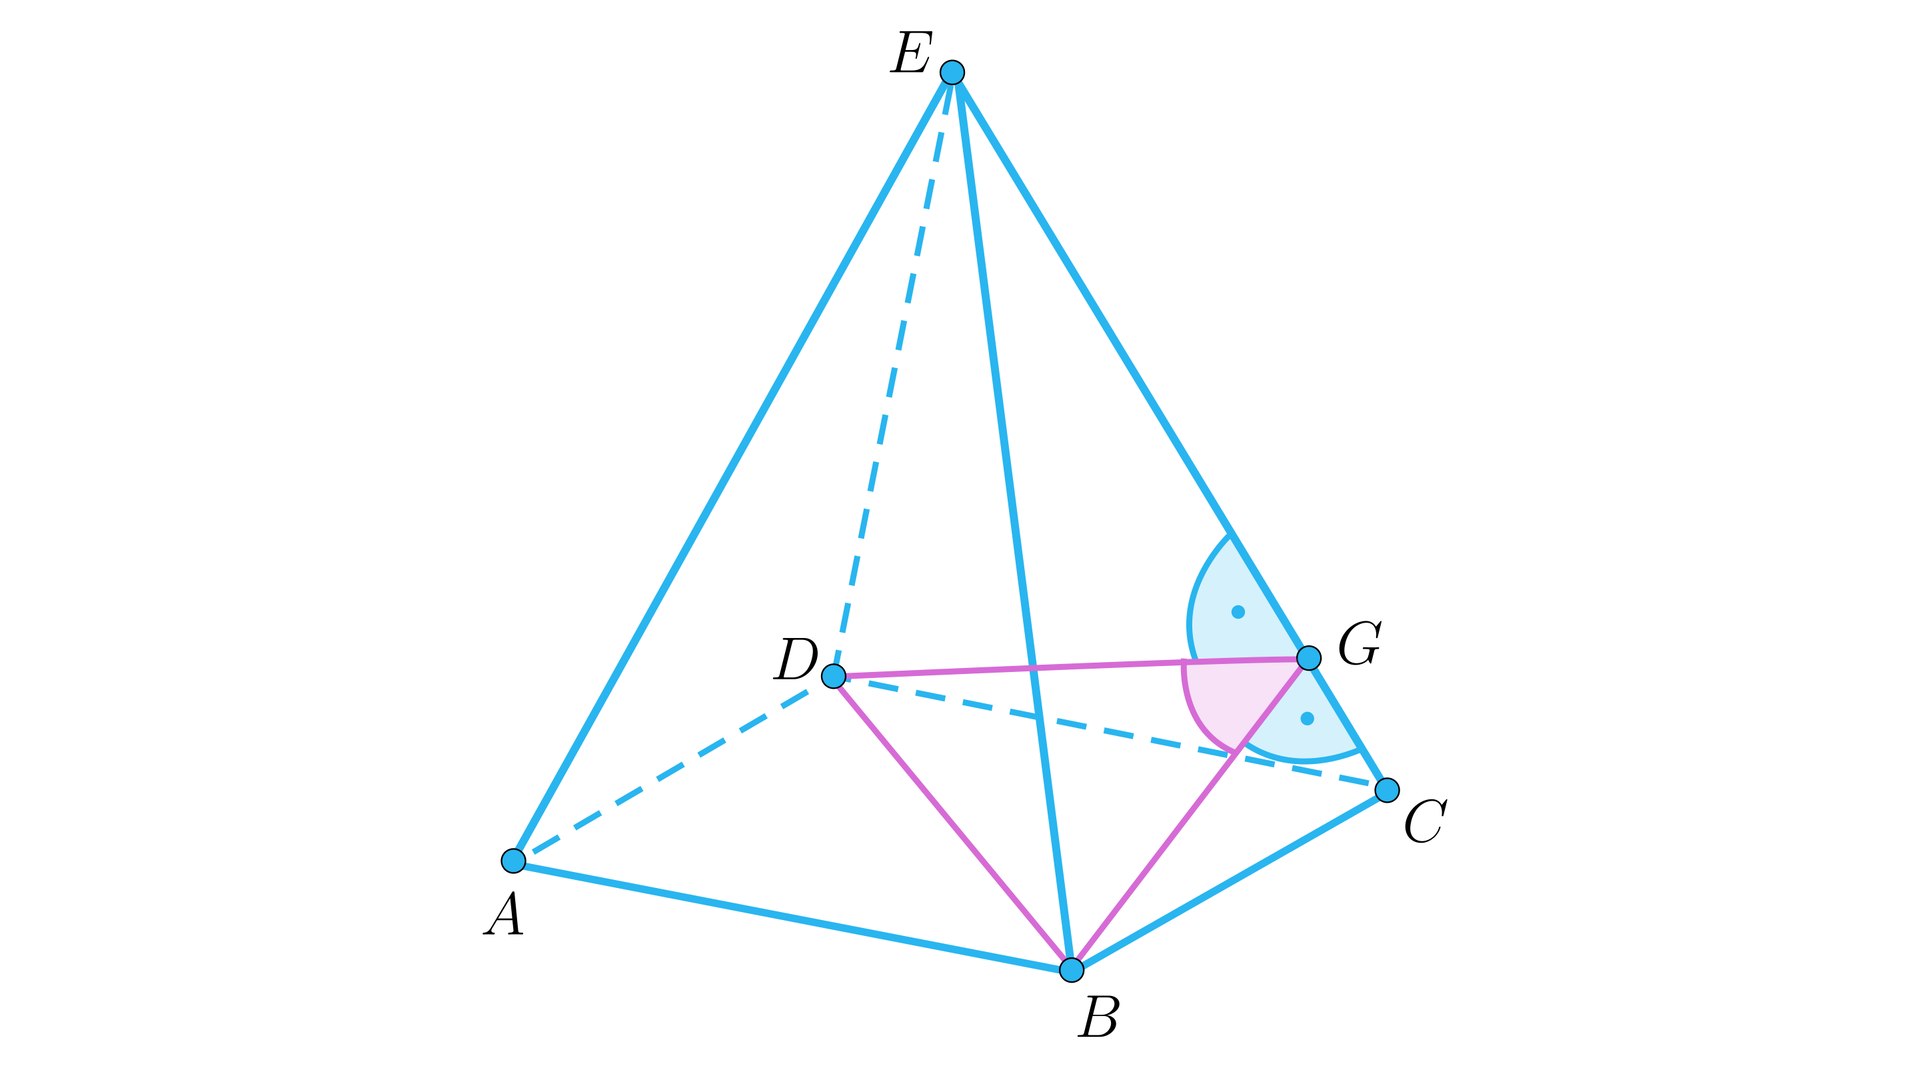 Rysunek przedstawia ostrosłup prawidłowy czworokątny o podstawie A B C D i wierzchołku E. Na podstawie oznaczono przekątną B D. Z punktu B poprowadzony jest odcinek B G, przy czym punkt G leży na krawędzi C E w taki sposób, że kąt między odcinkiem B G i częścią krawędzi, czyli odcinkiem G C wynosi 90 stopni. Analogicznie z punktu D wyprowadzony jest odcinek D G w taki sposób, że kąt między tym odcinkiem a częścią krawędzi, czyli odcinkiem G E wynosi 90 stopni. Na rysunku wyróżniony jest powstały trójkąt B G D. 